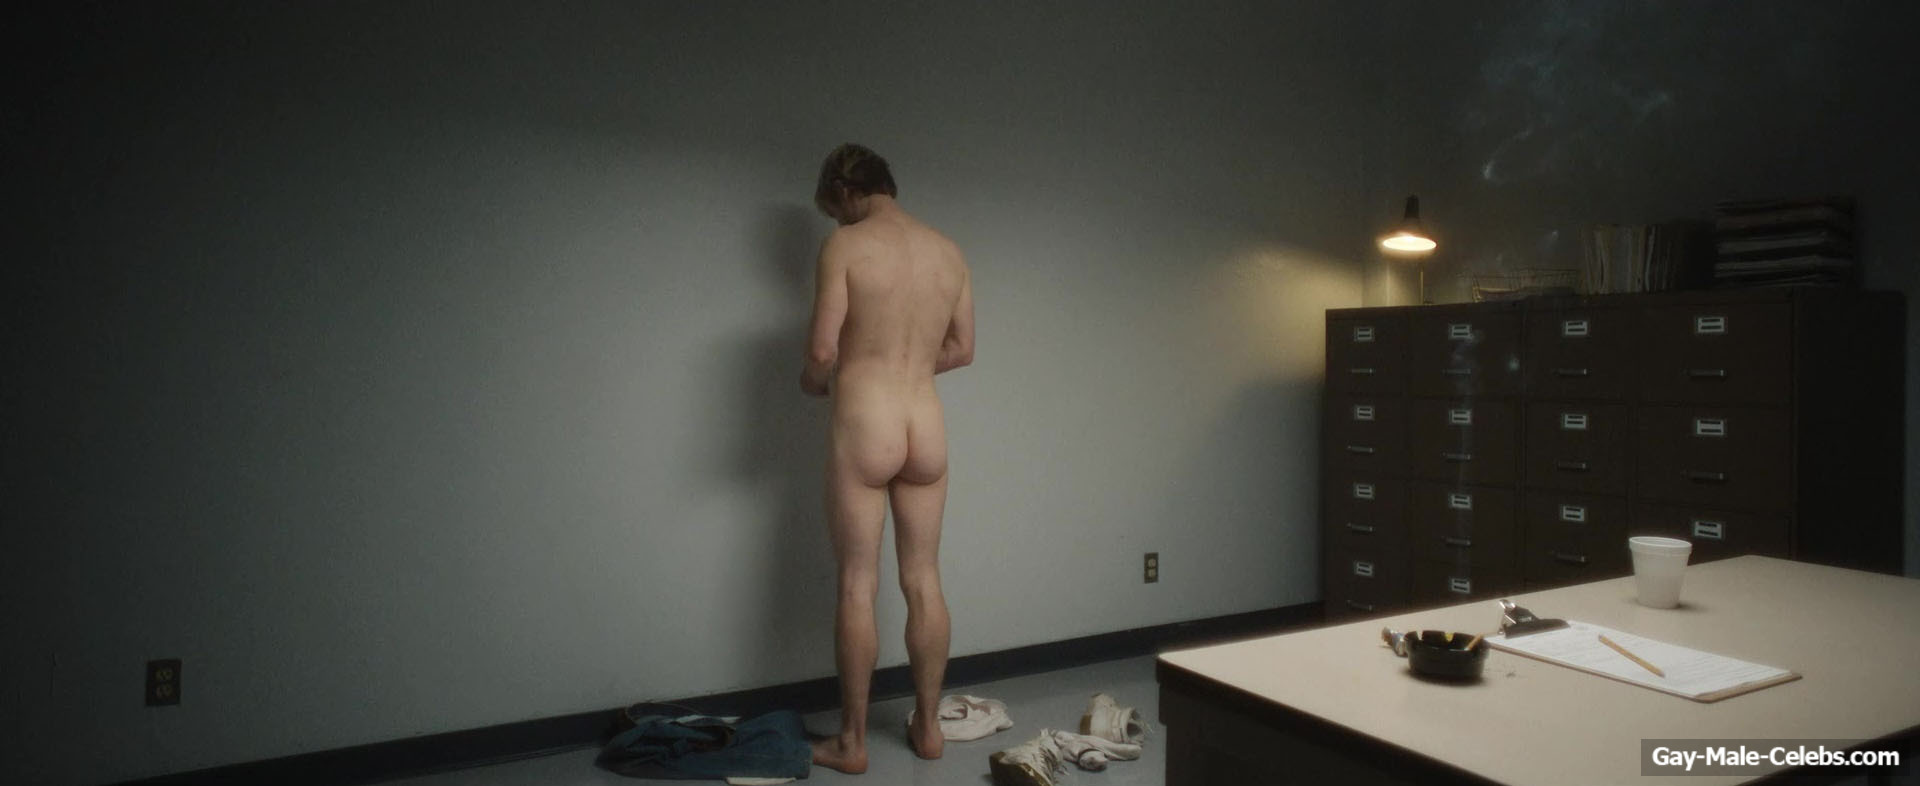 Evan Peters Nude Gay Sex Scenes in Dahmer